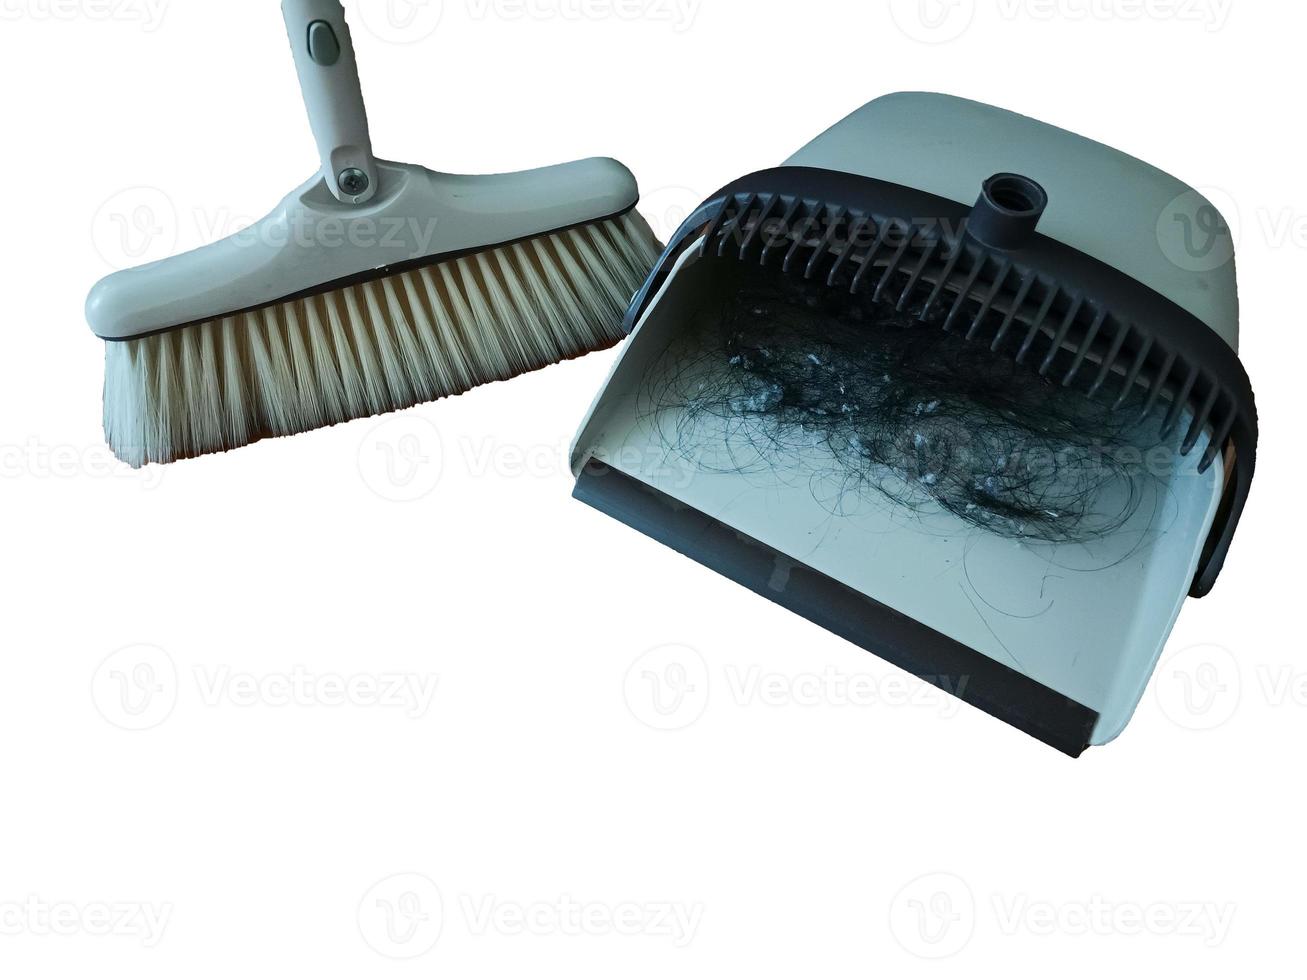 barrer el polvo con una escoba en un recogedor, concepto de limpieza sobre fondo blanco. foto